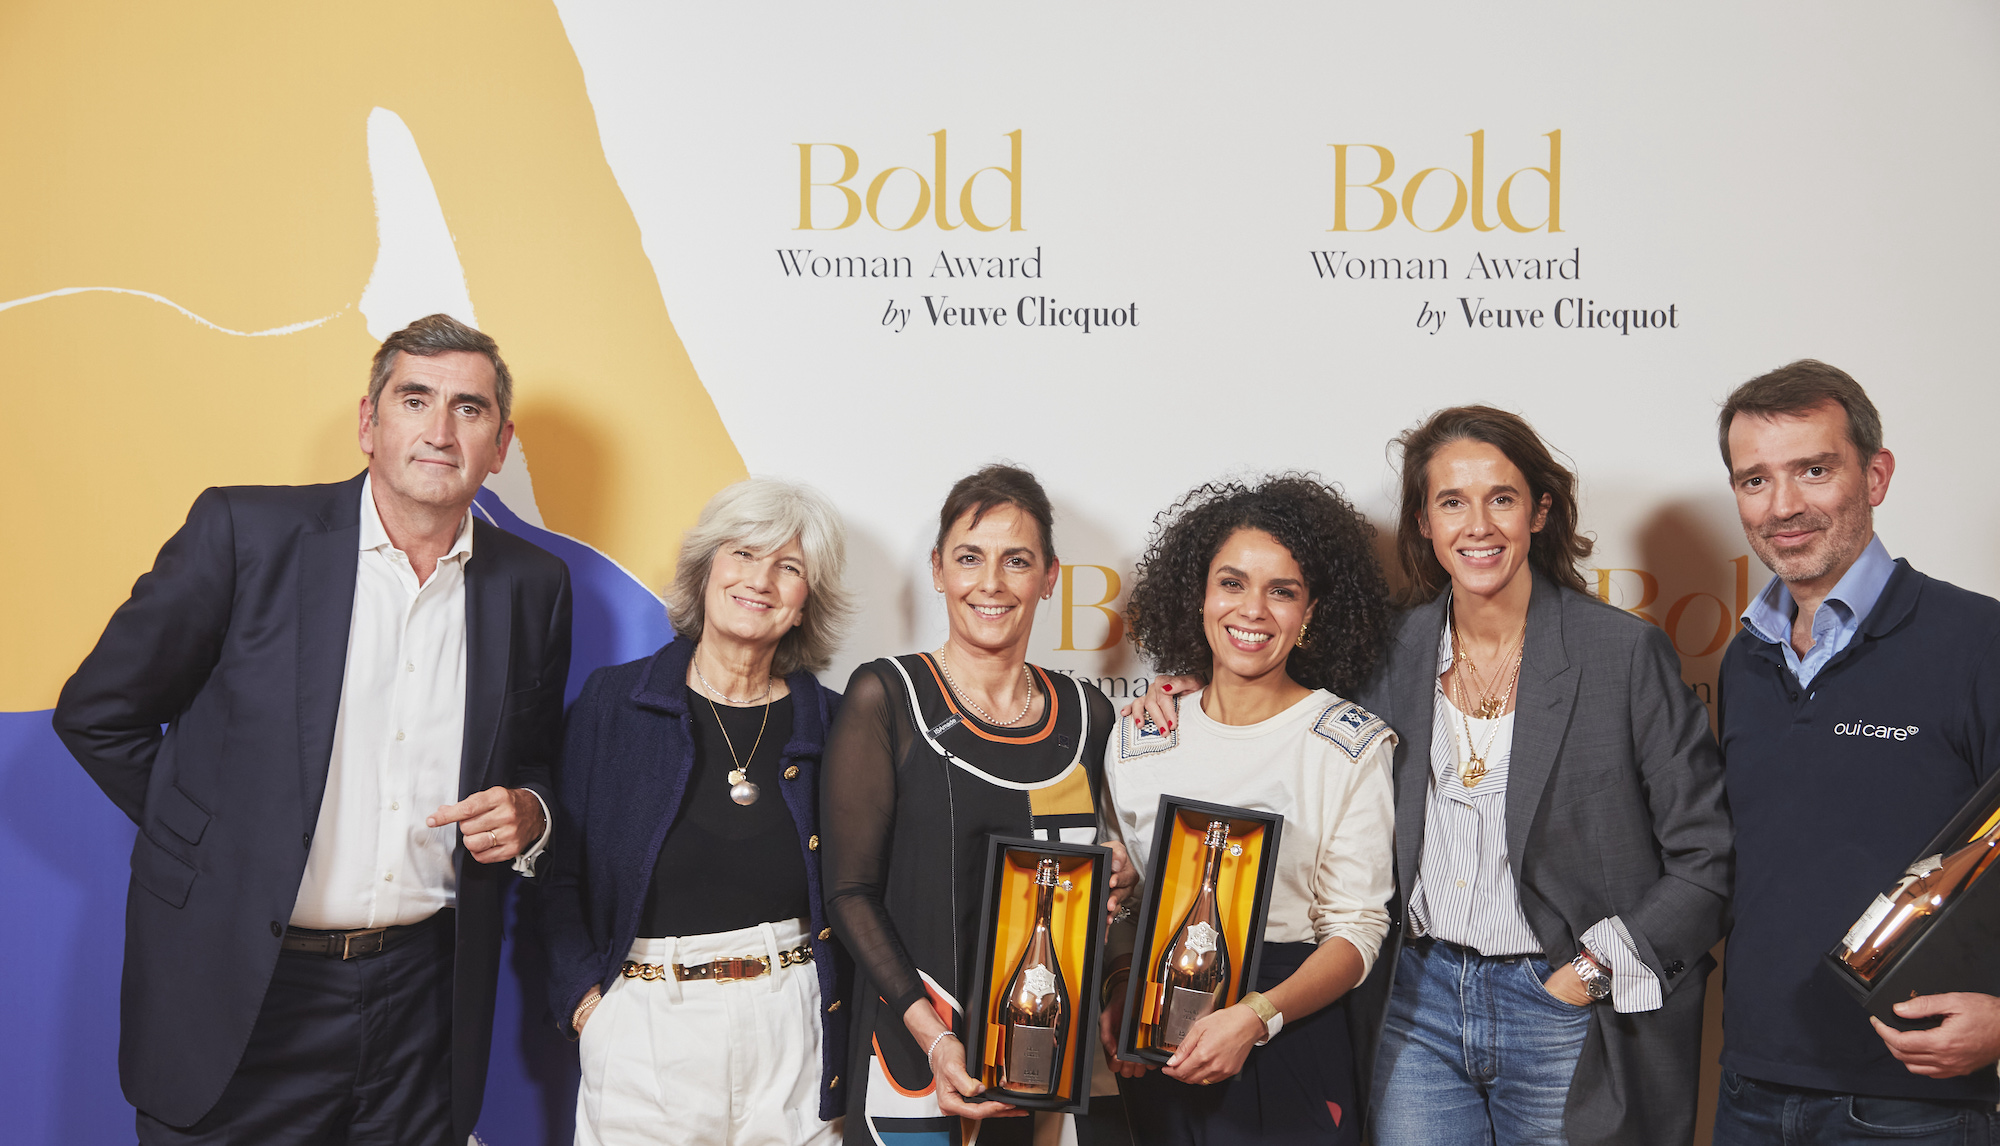 Photo of Desde el Business Woman Award hasta el Bold Woman Award, Veuve Clicquot celebra 50 años apoyando la audacia femenina